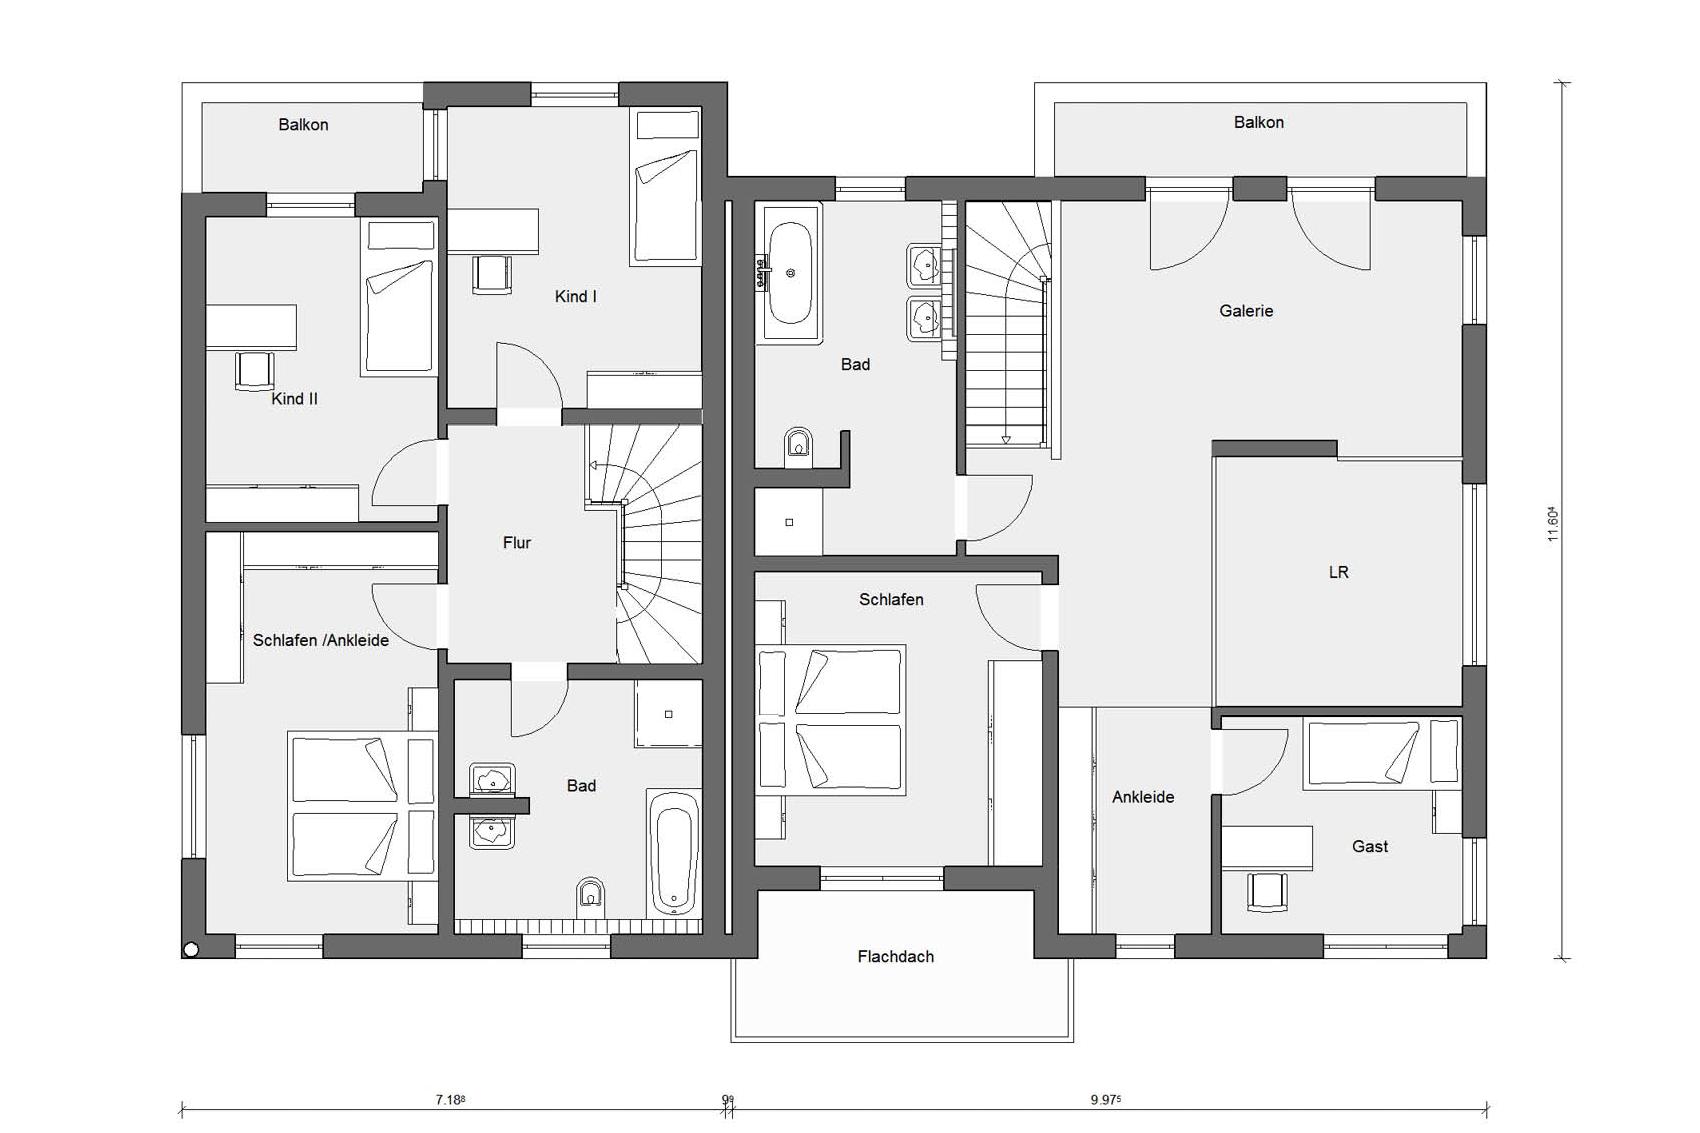 Floor plan attic D 20-130.1 / D 20-149.1 penthouse